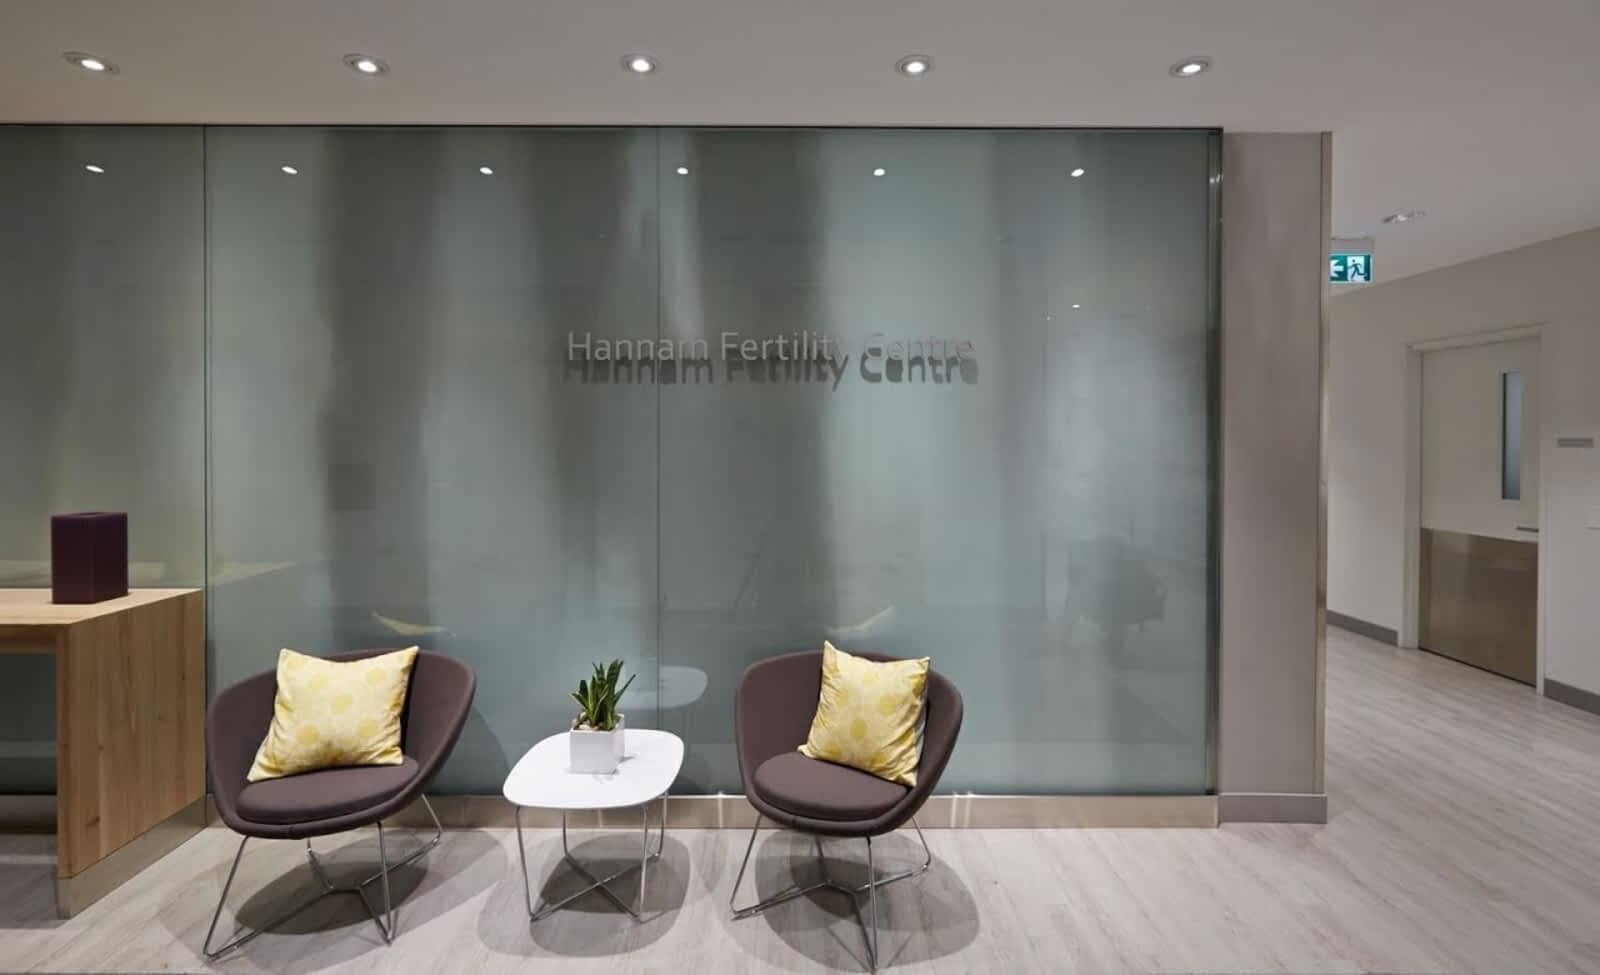 Hannam Fertility Centre